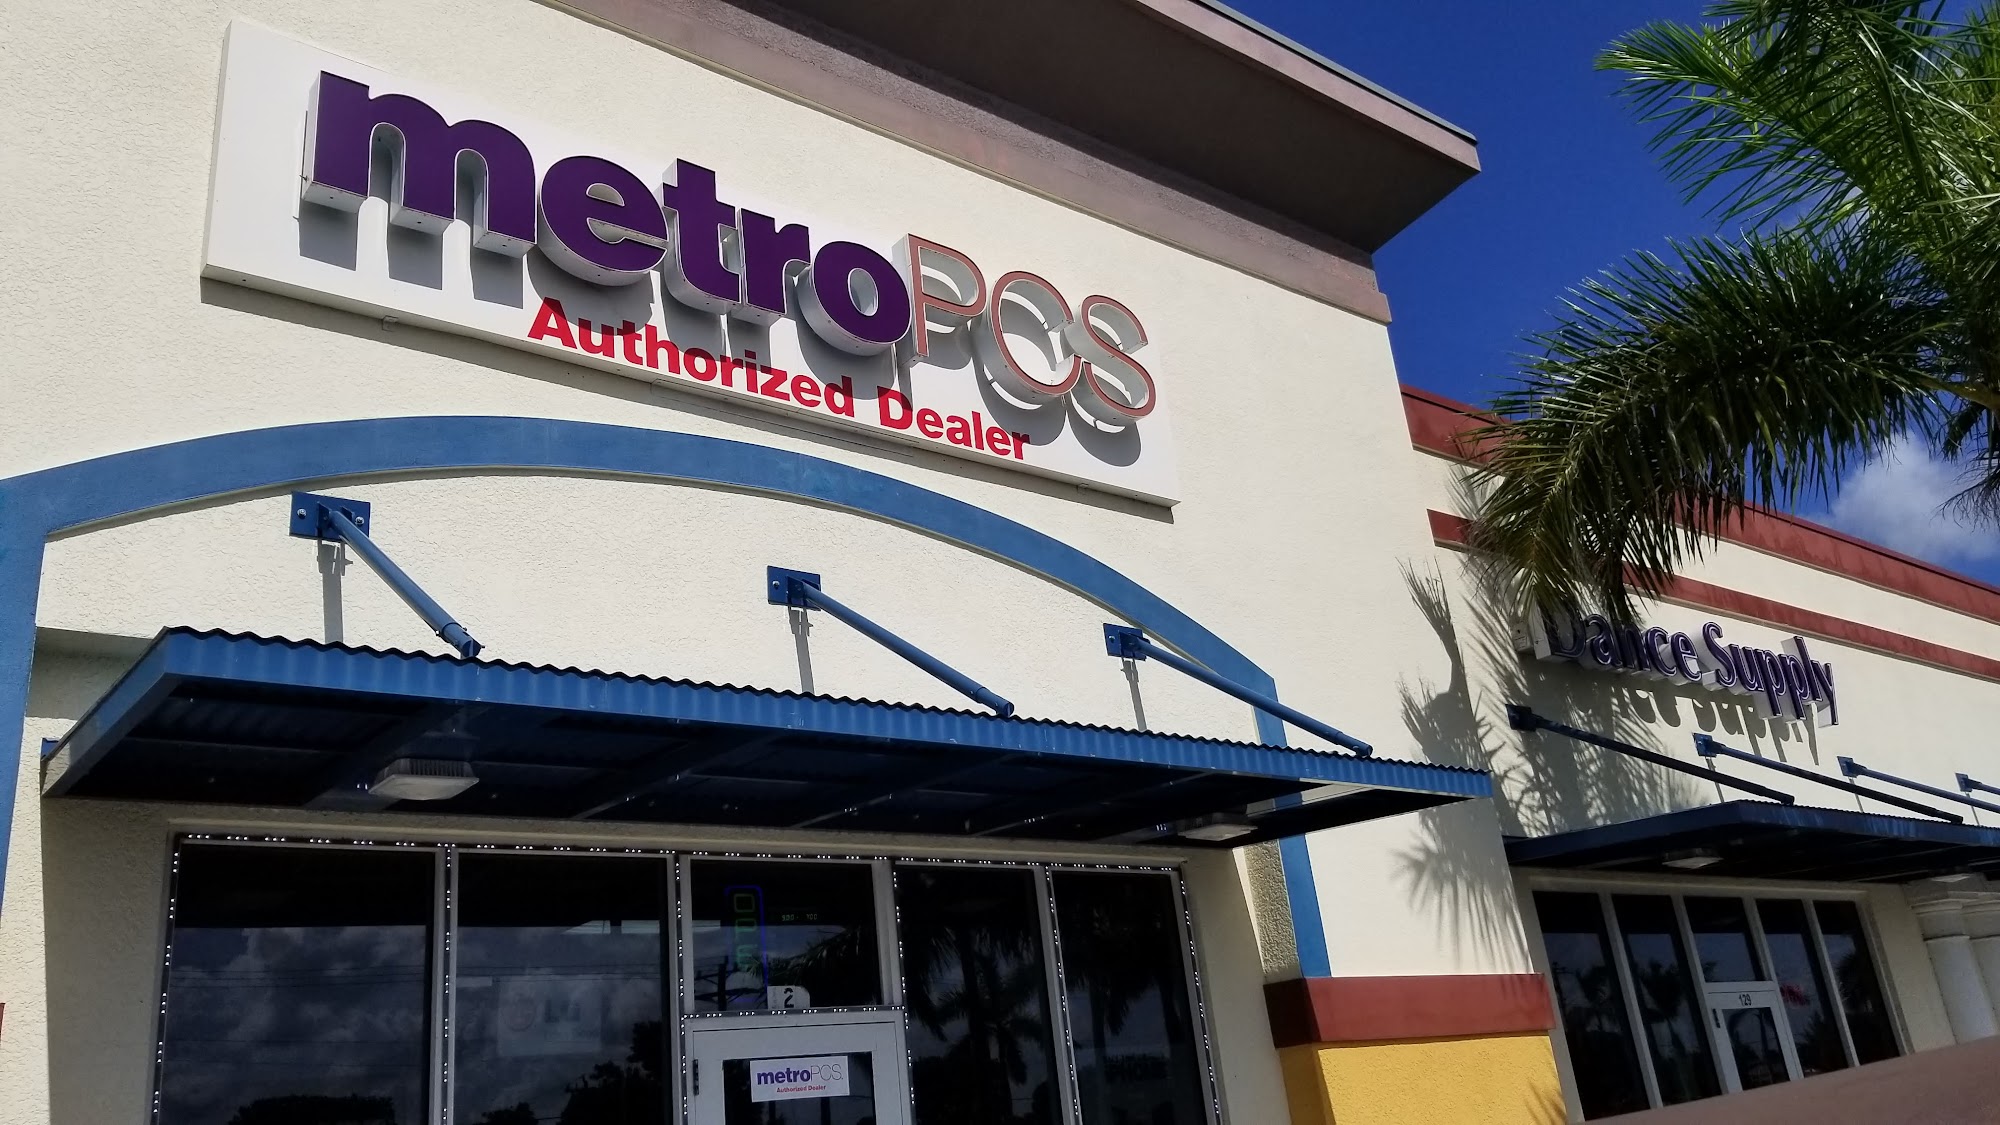 MetroPCS Premium Authorized Dealer